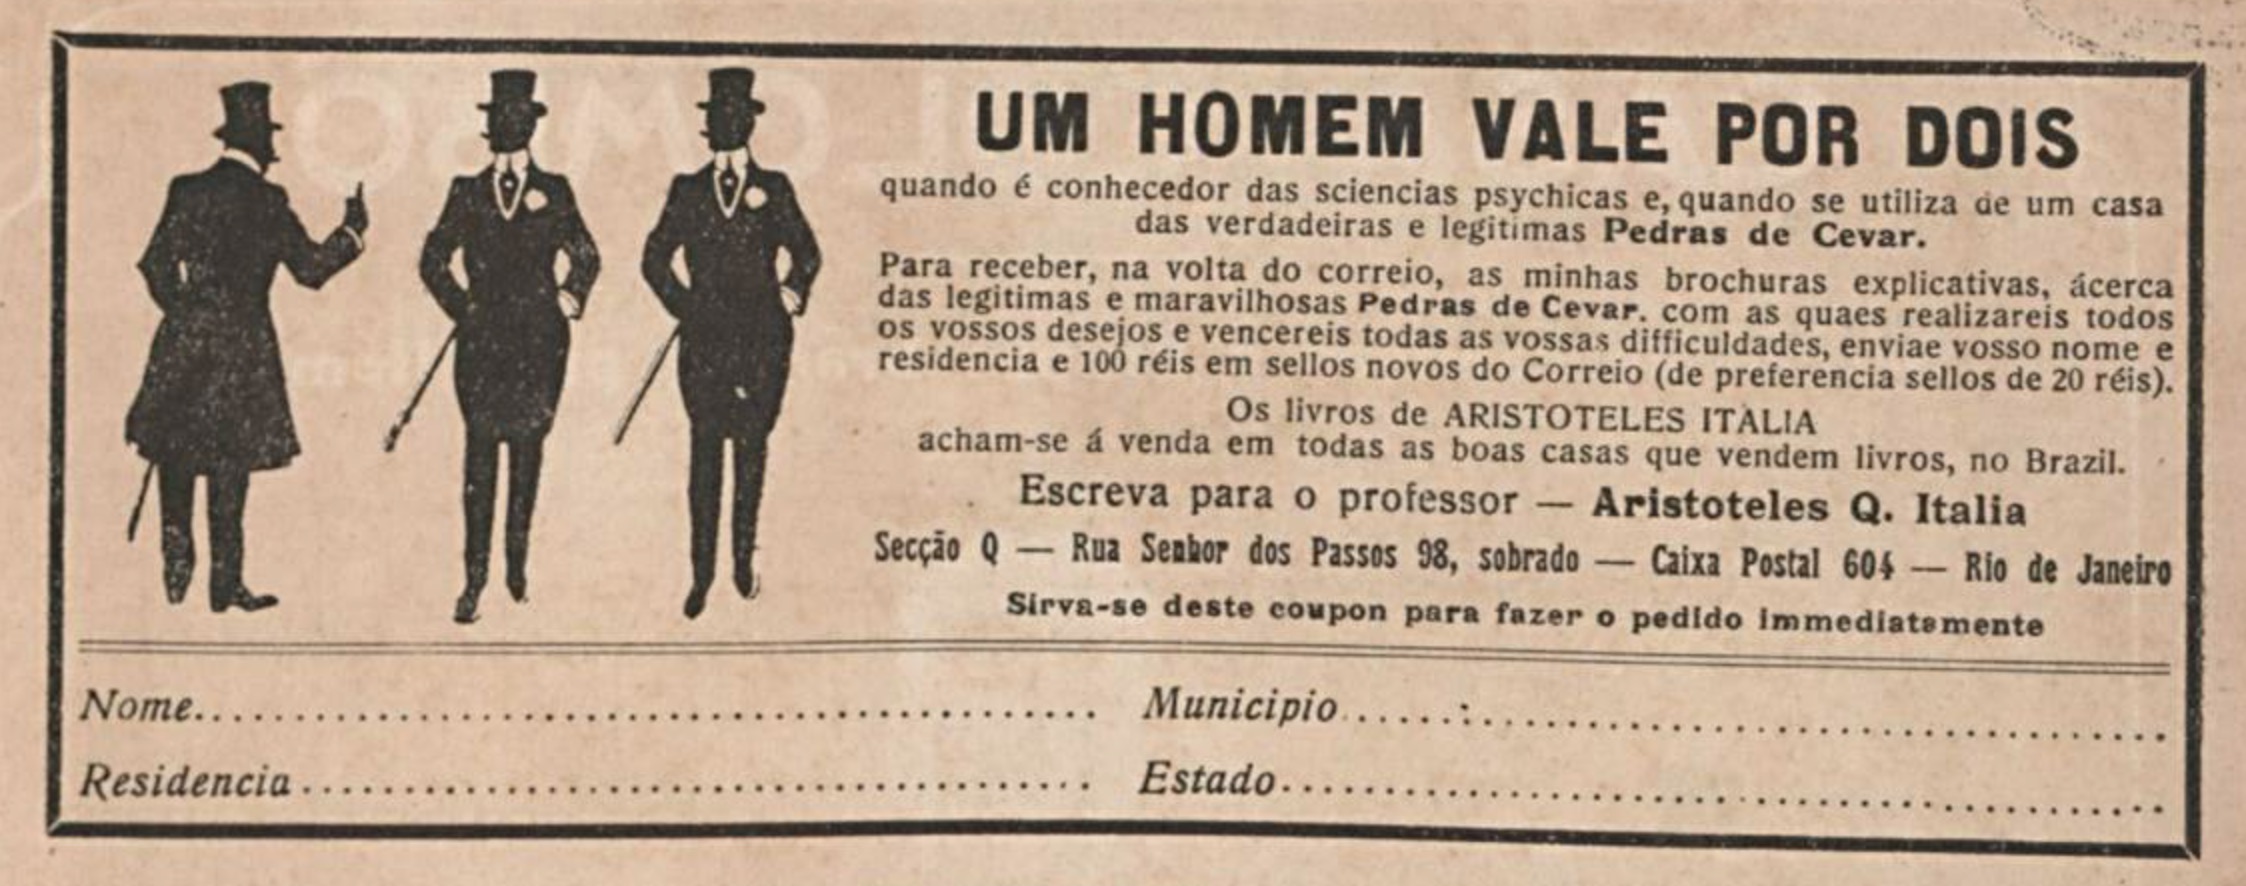 Anúncio apresentado em 1917 com serviço de ajuda para elevar ganhos na vida das pessoas